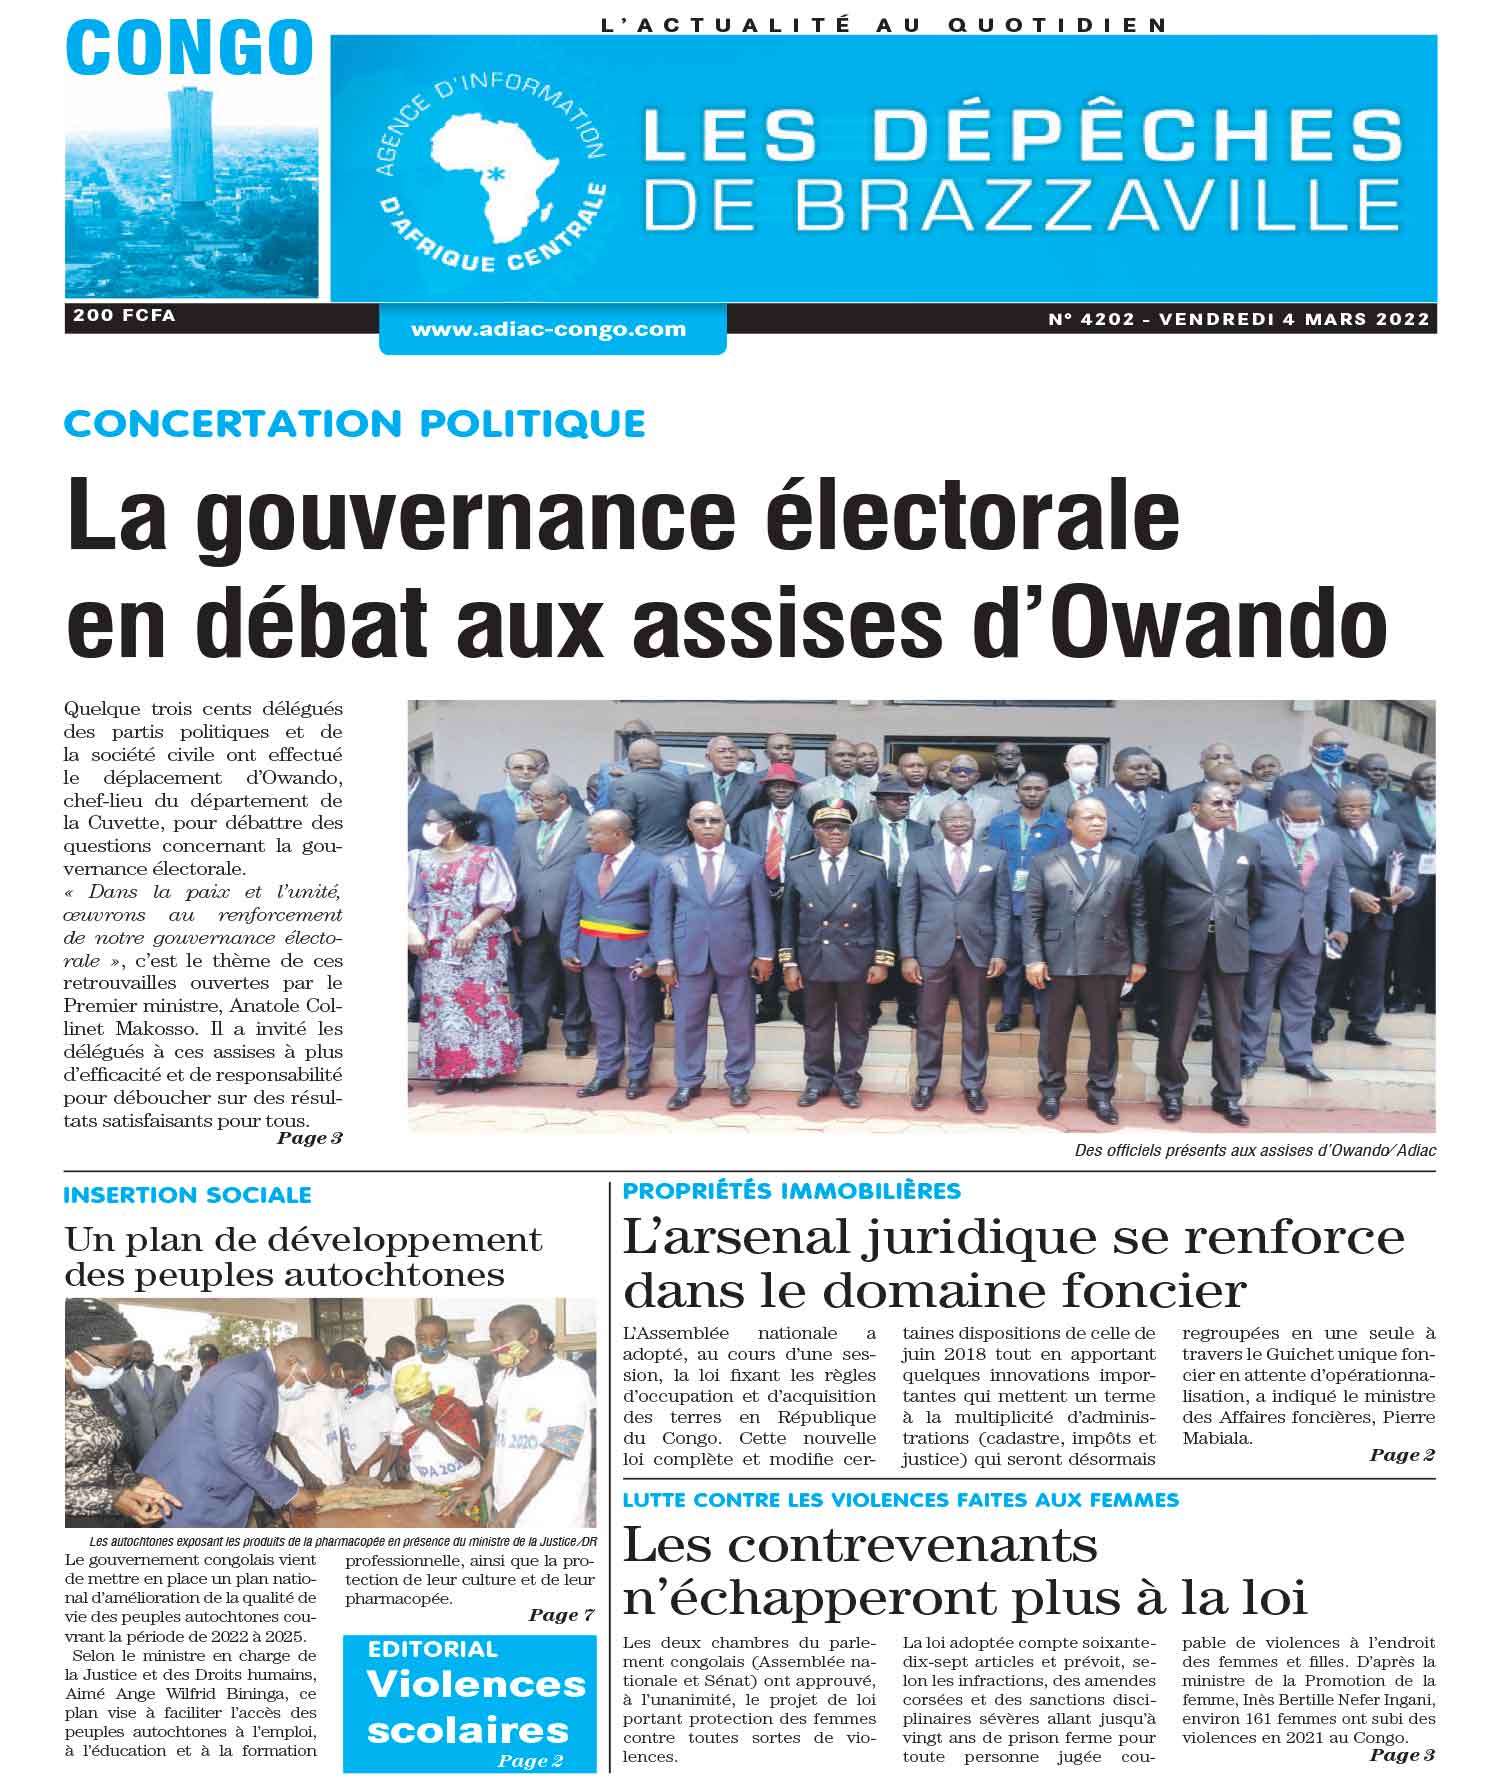 Cover Les Dépêches de Brazzaville - 4202 